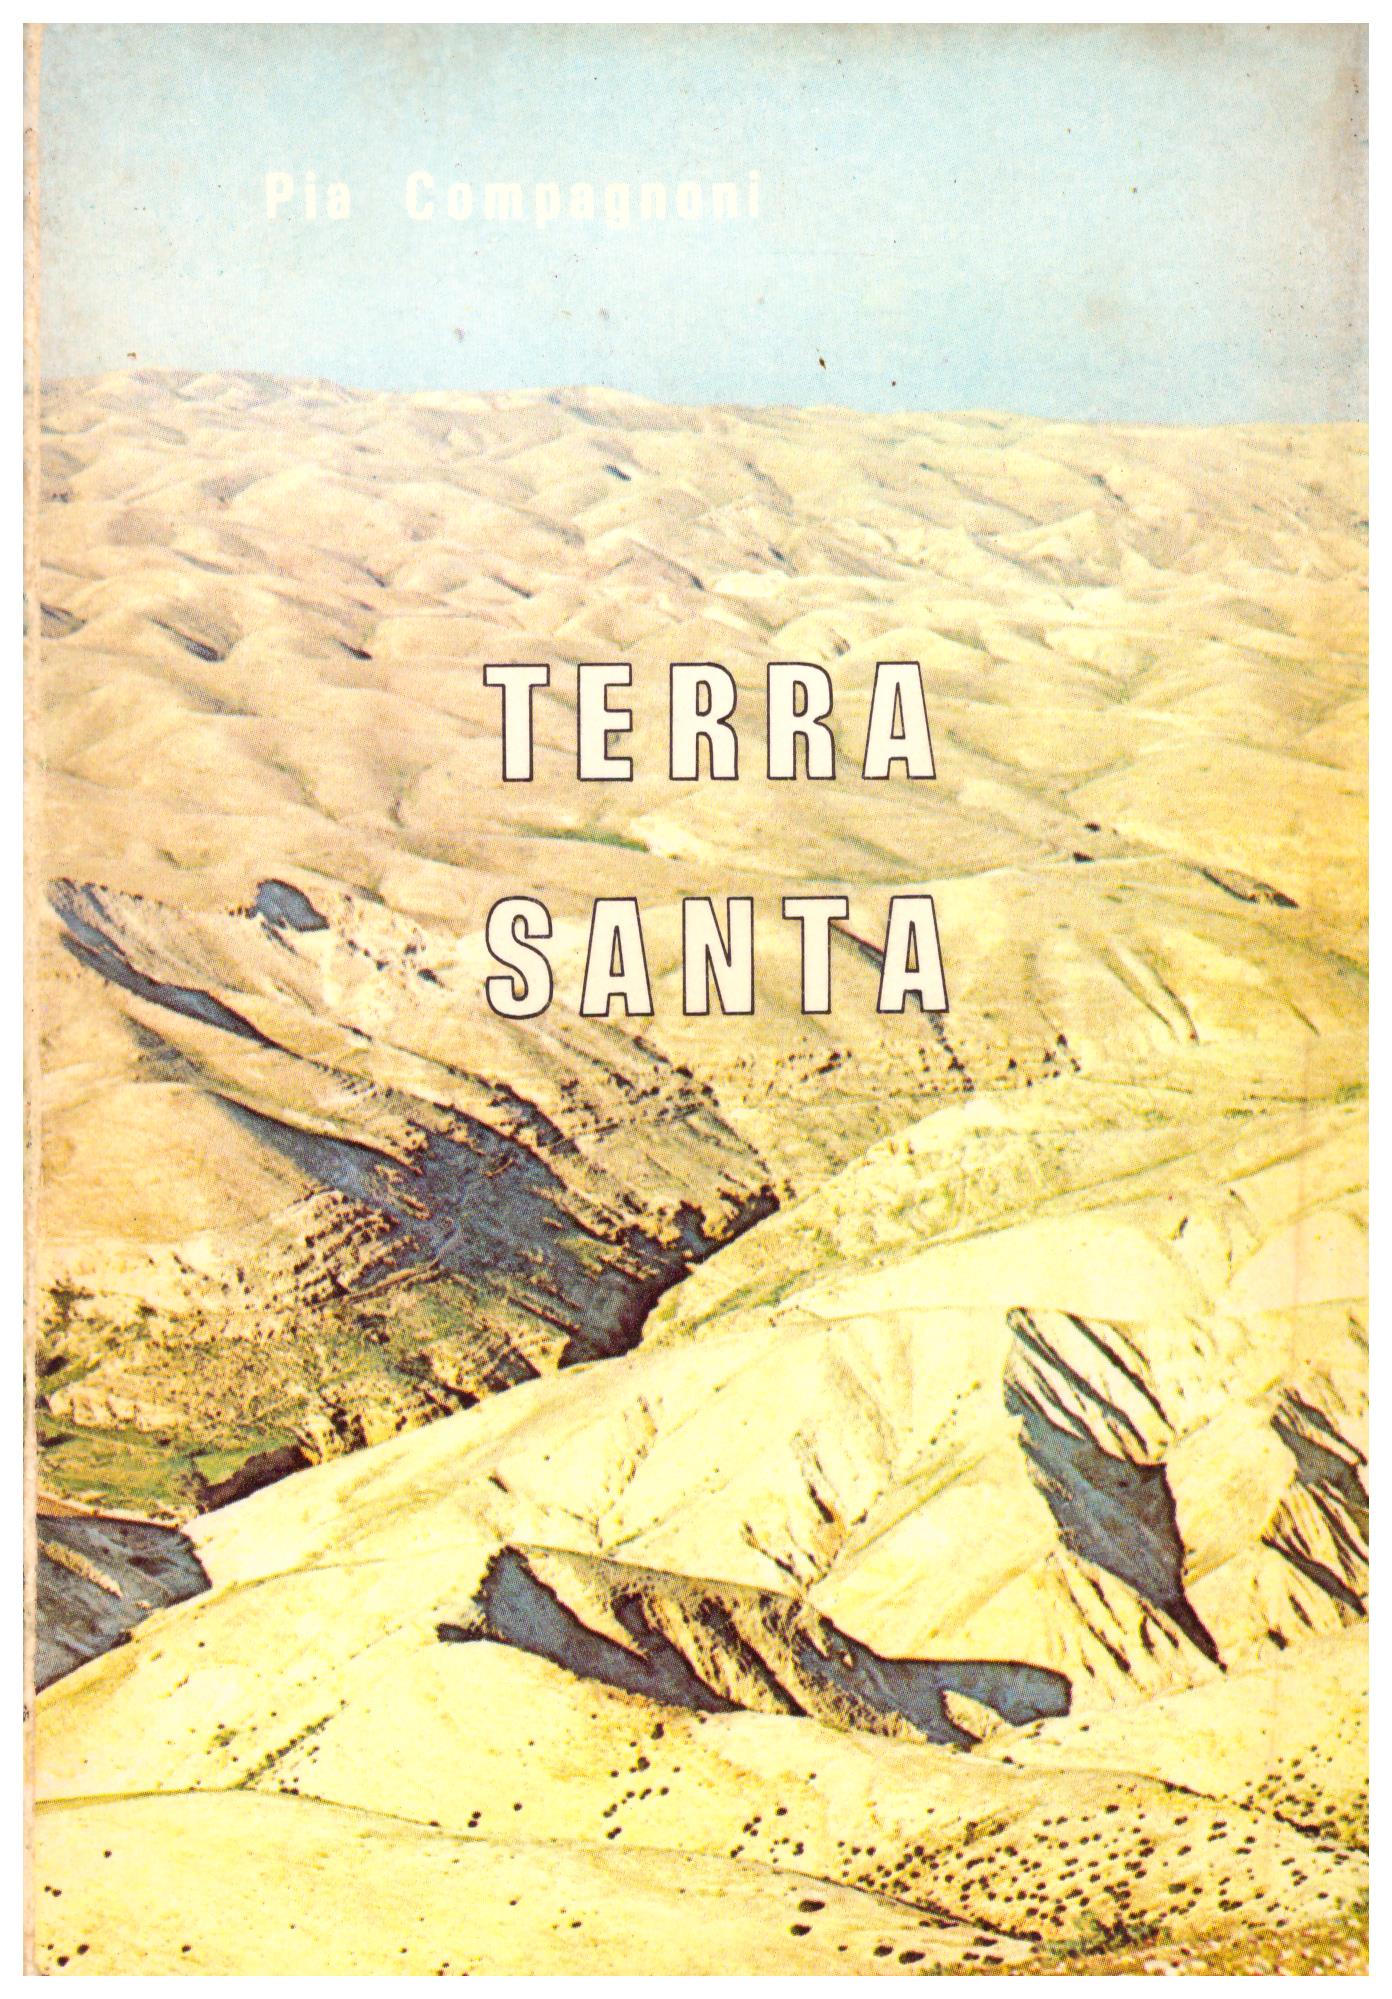 Titolo: Terra santa Autore: Pia Compagnoni Editore: franciscan printing press 1972